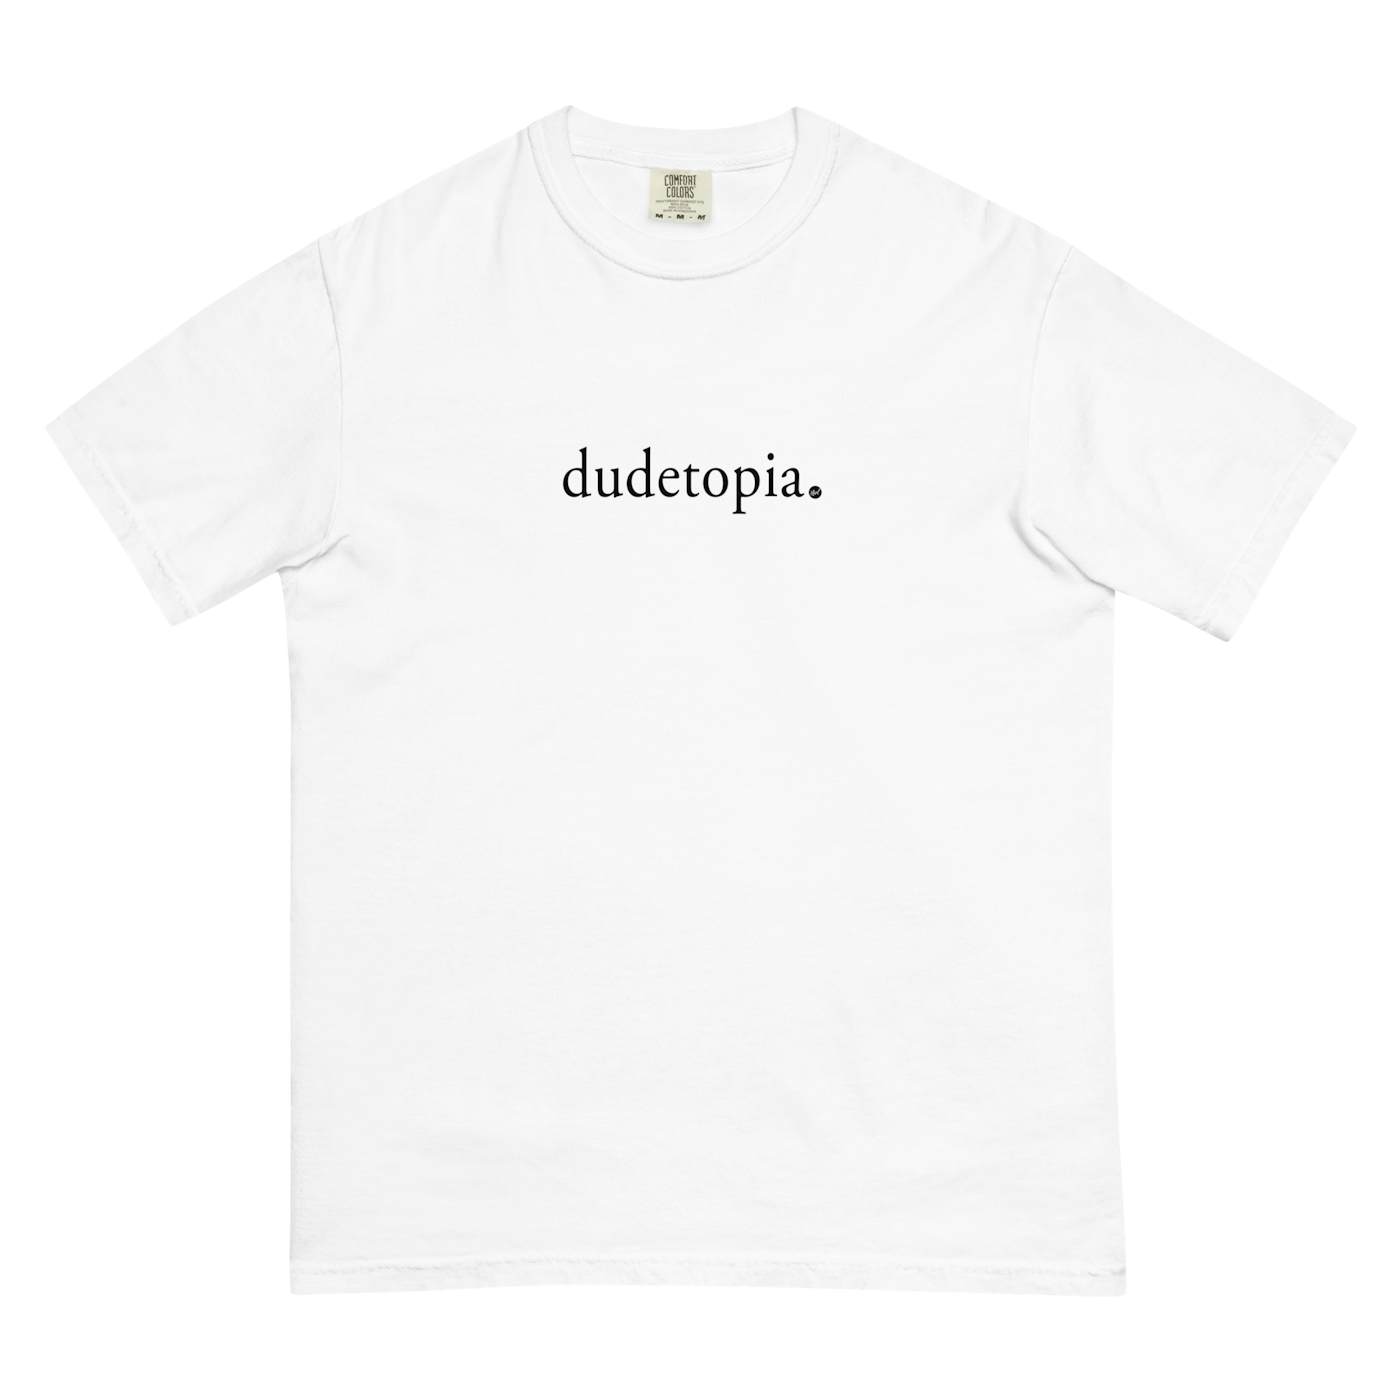 Coley Dudetopia T-Shirt